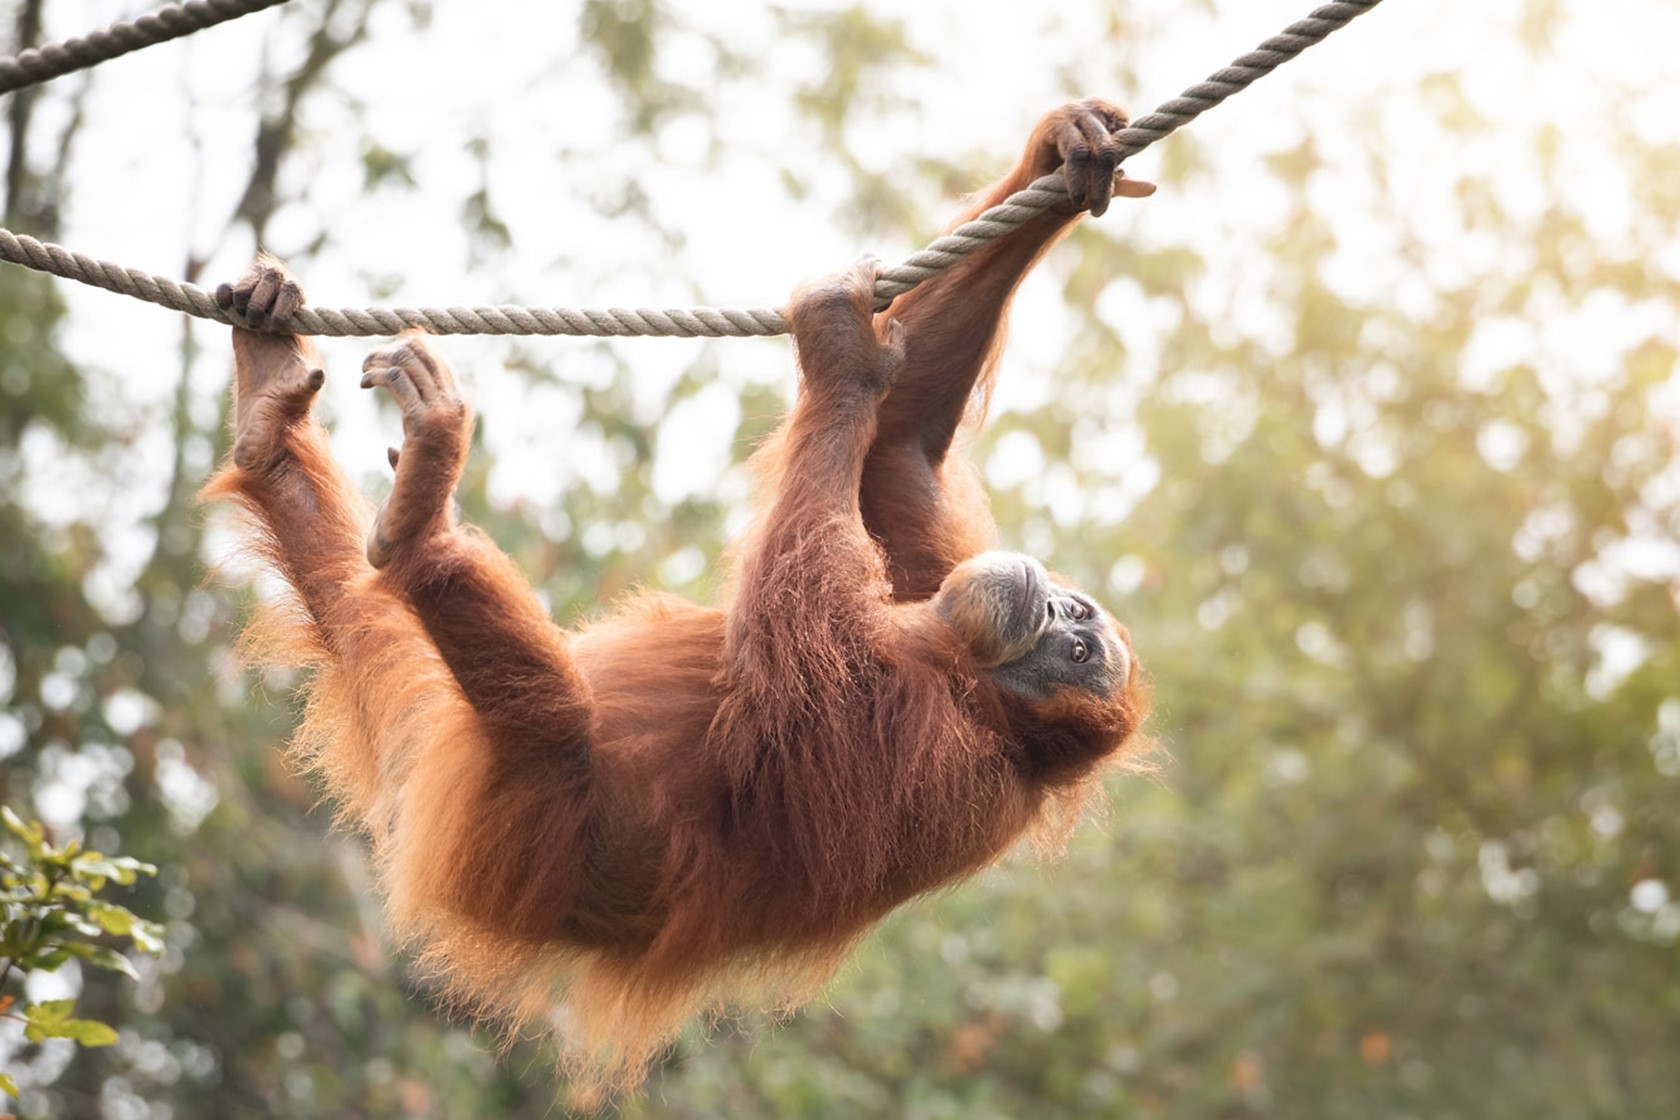 Sumatran Orangutan swings from a rope